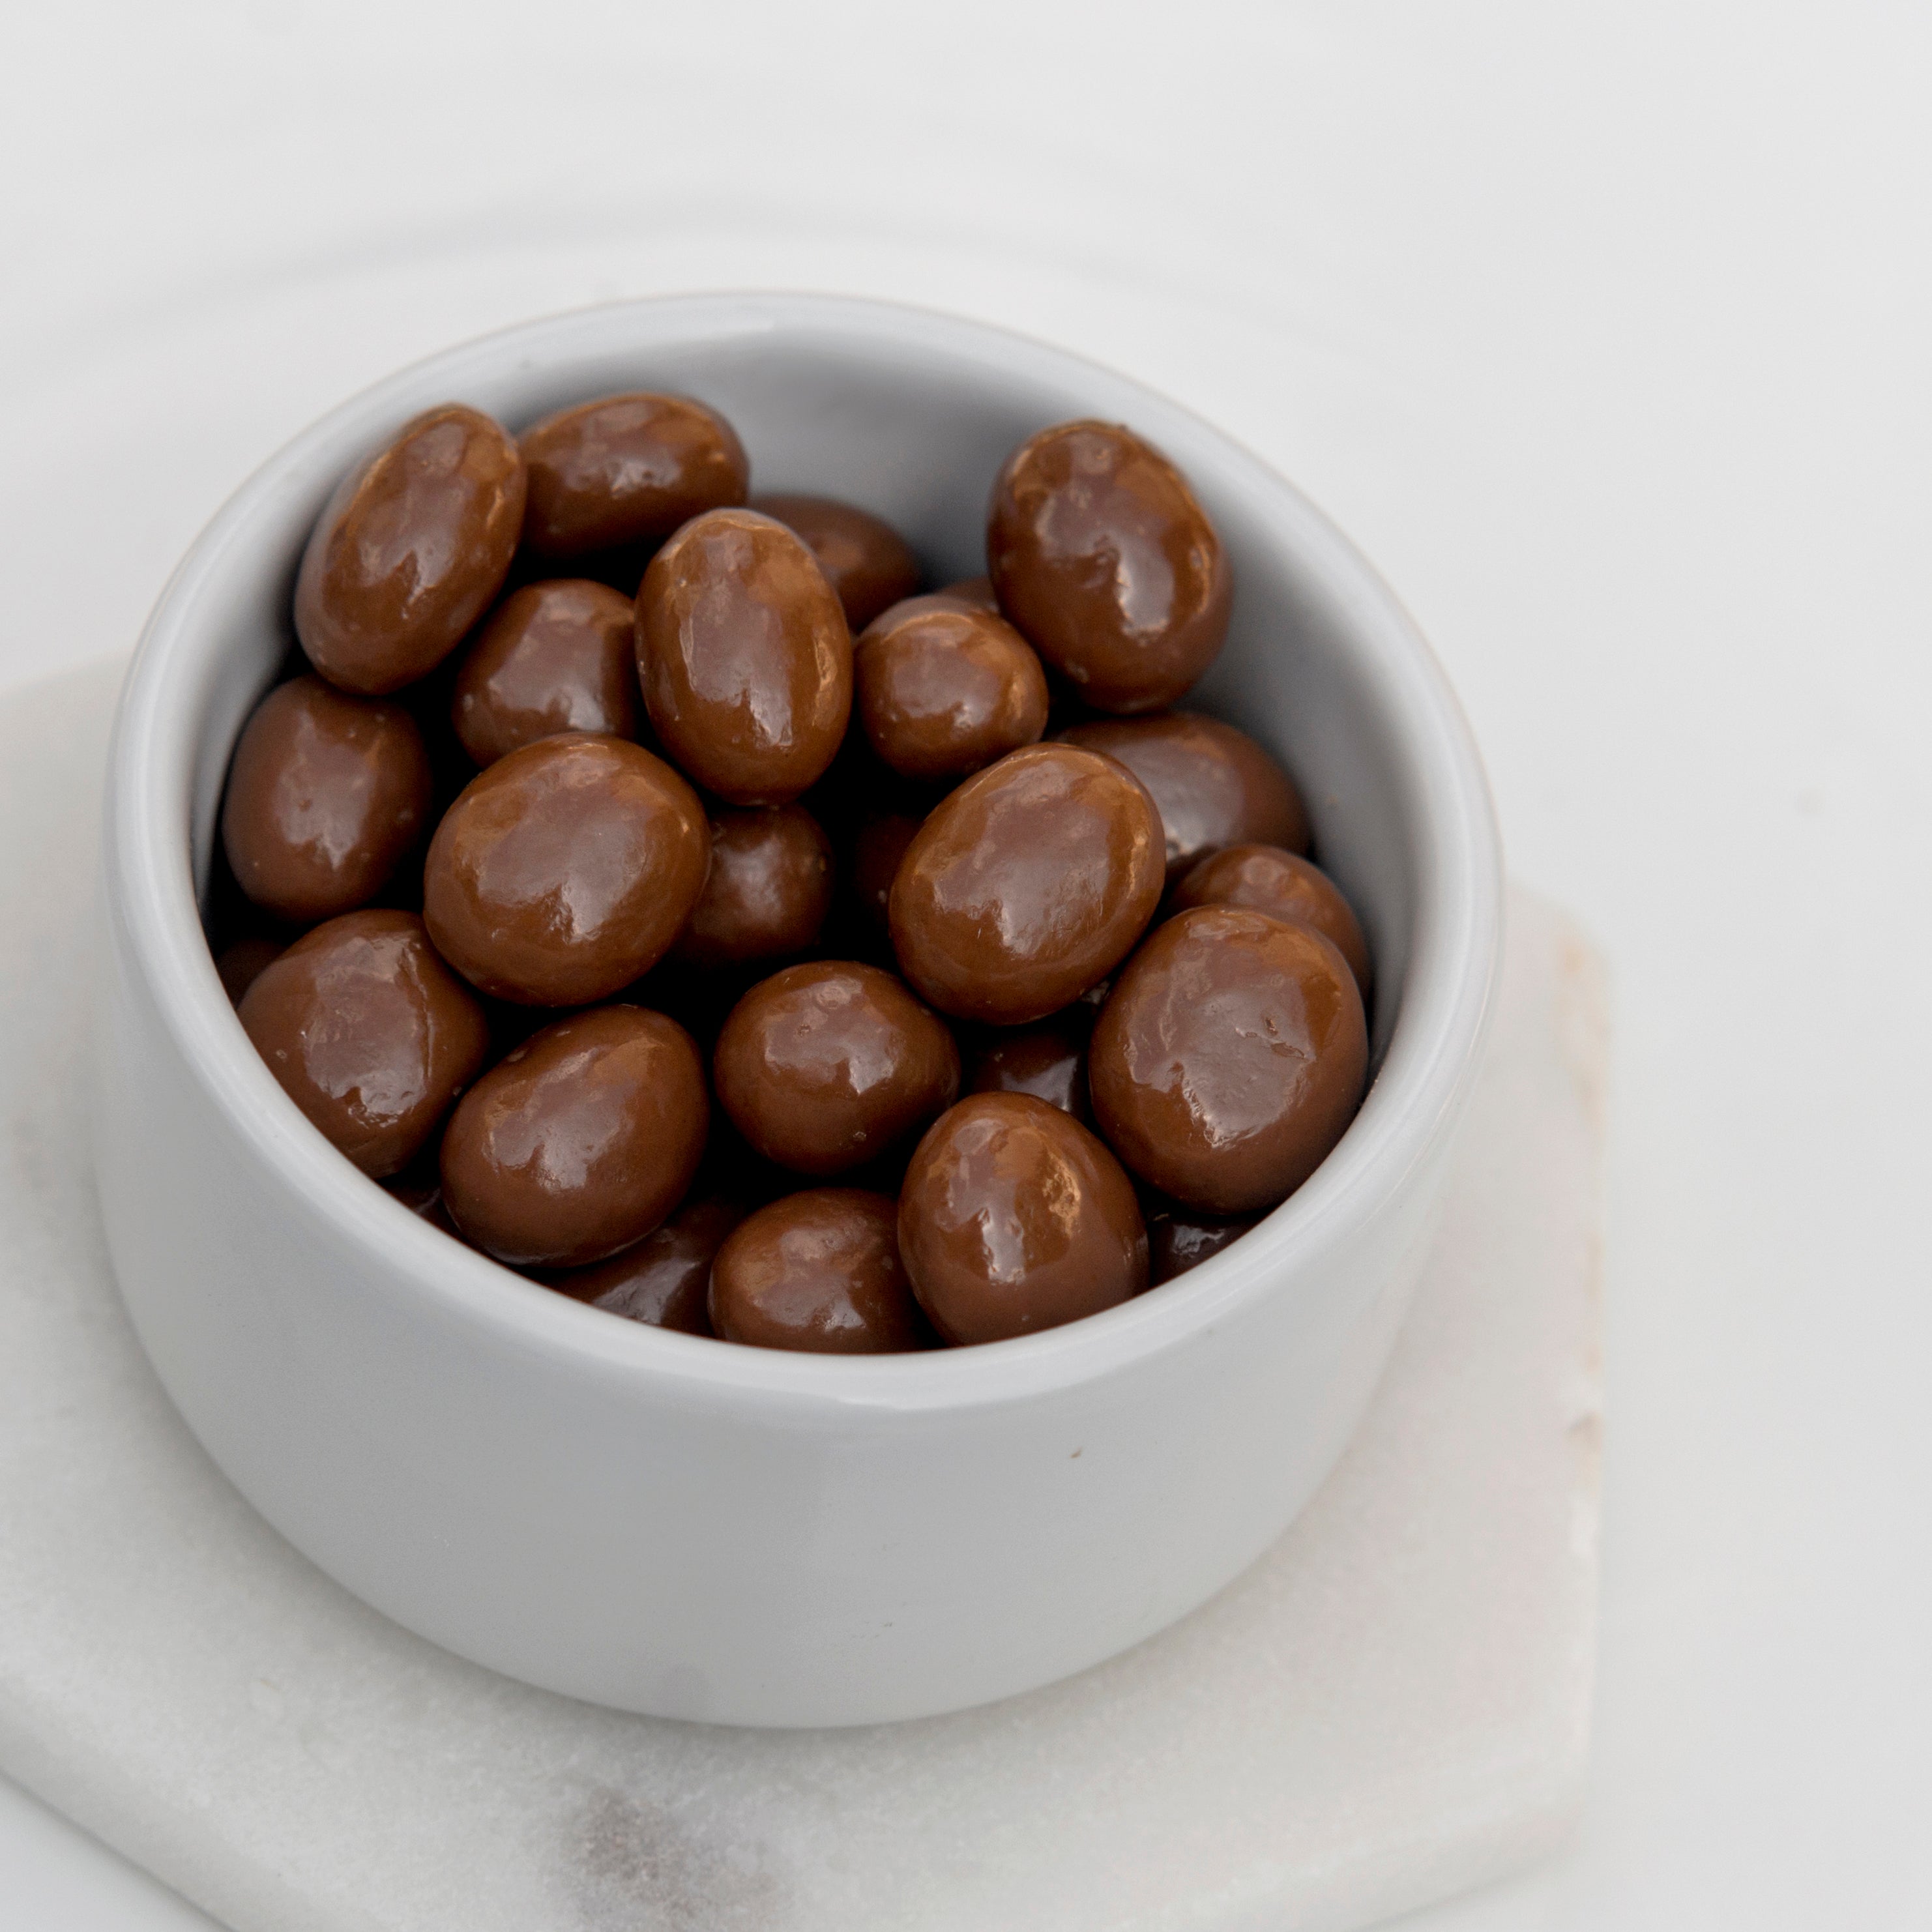 Milk Chocolate Sultanas (Chocolates) Image 3 - Naked Foods